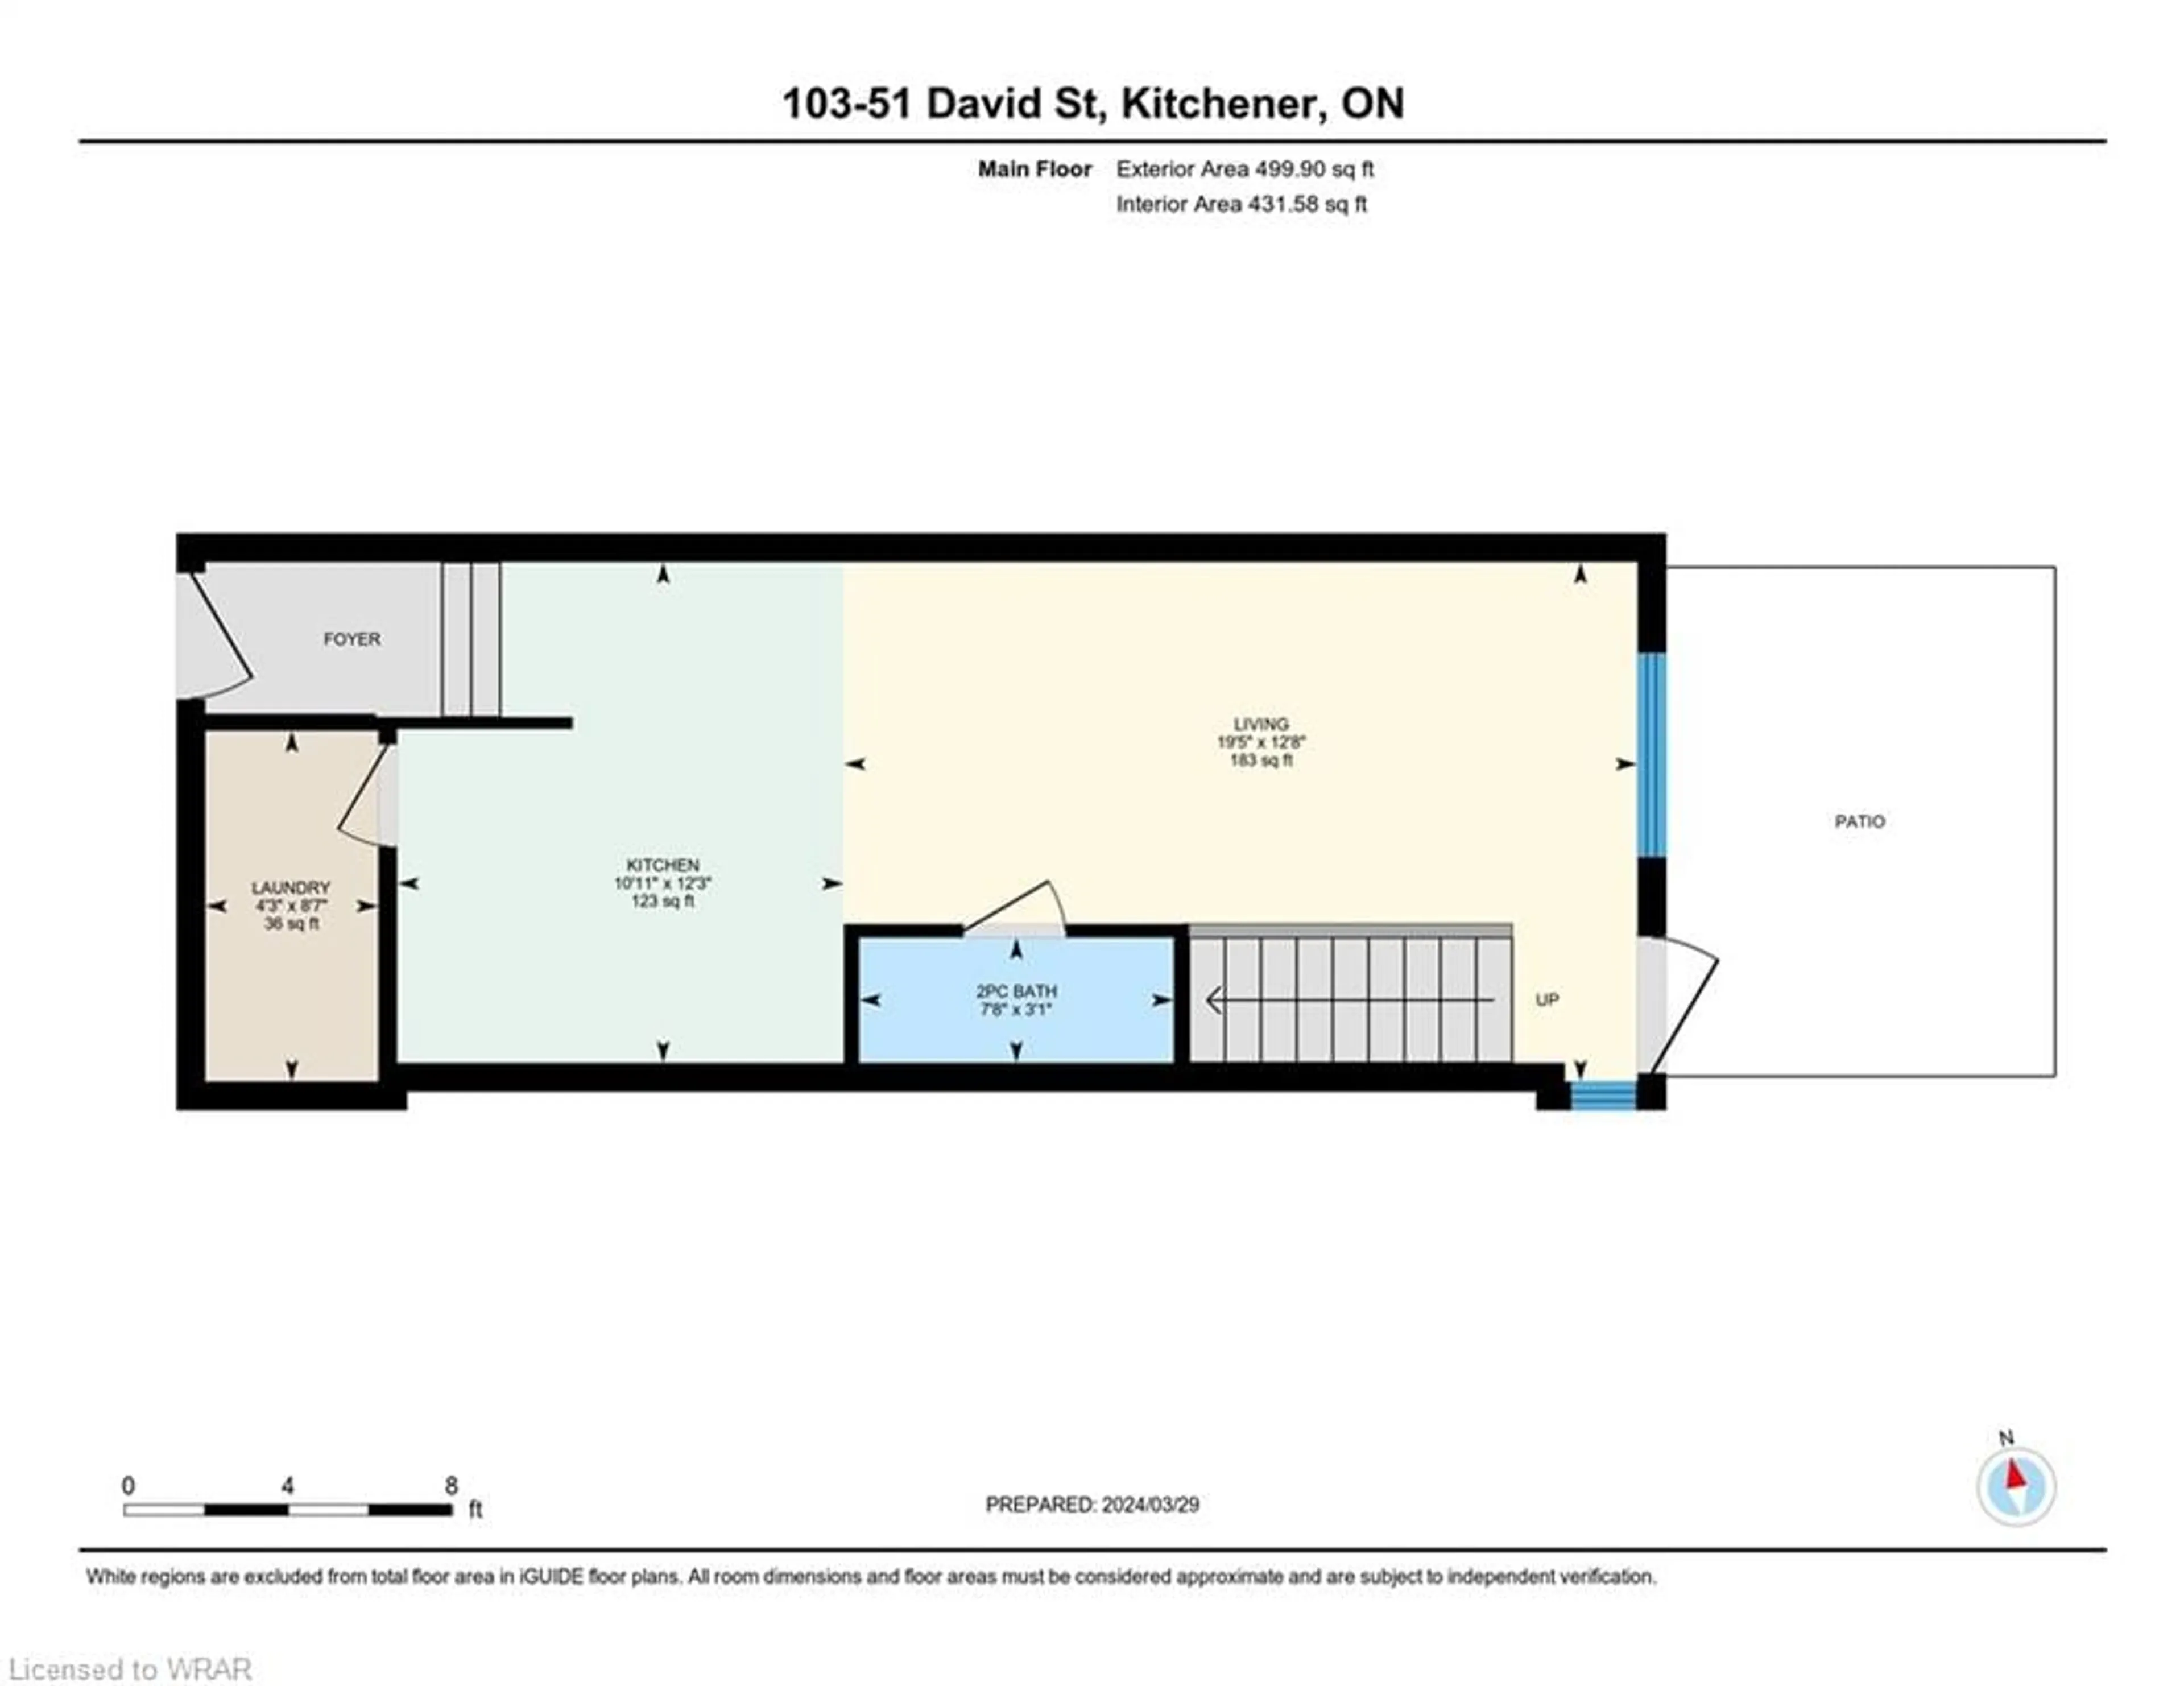 Floor plan for 51 David St #103, Kitchener Ontario N2G 0E8